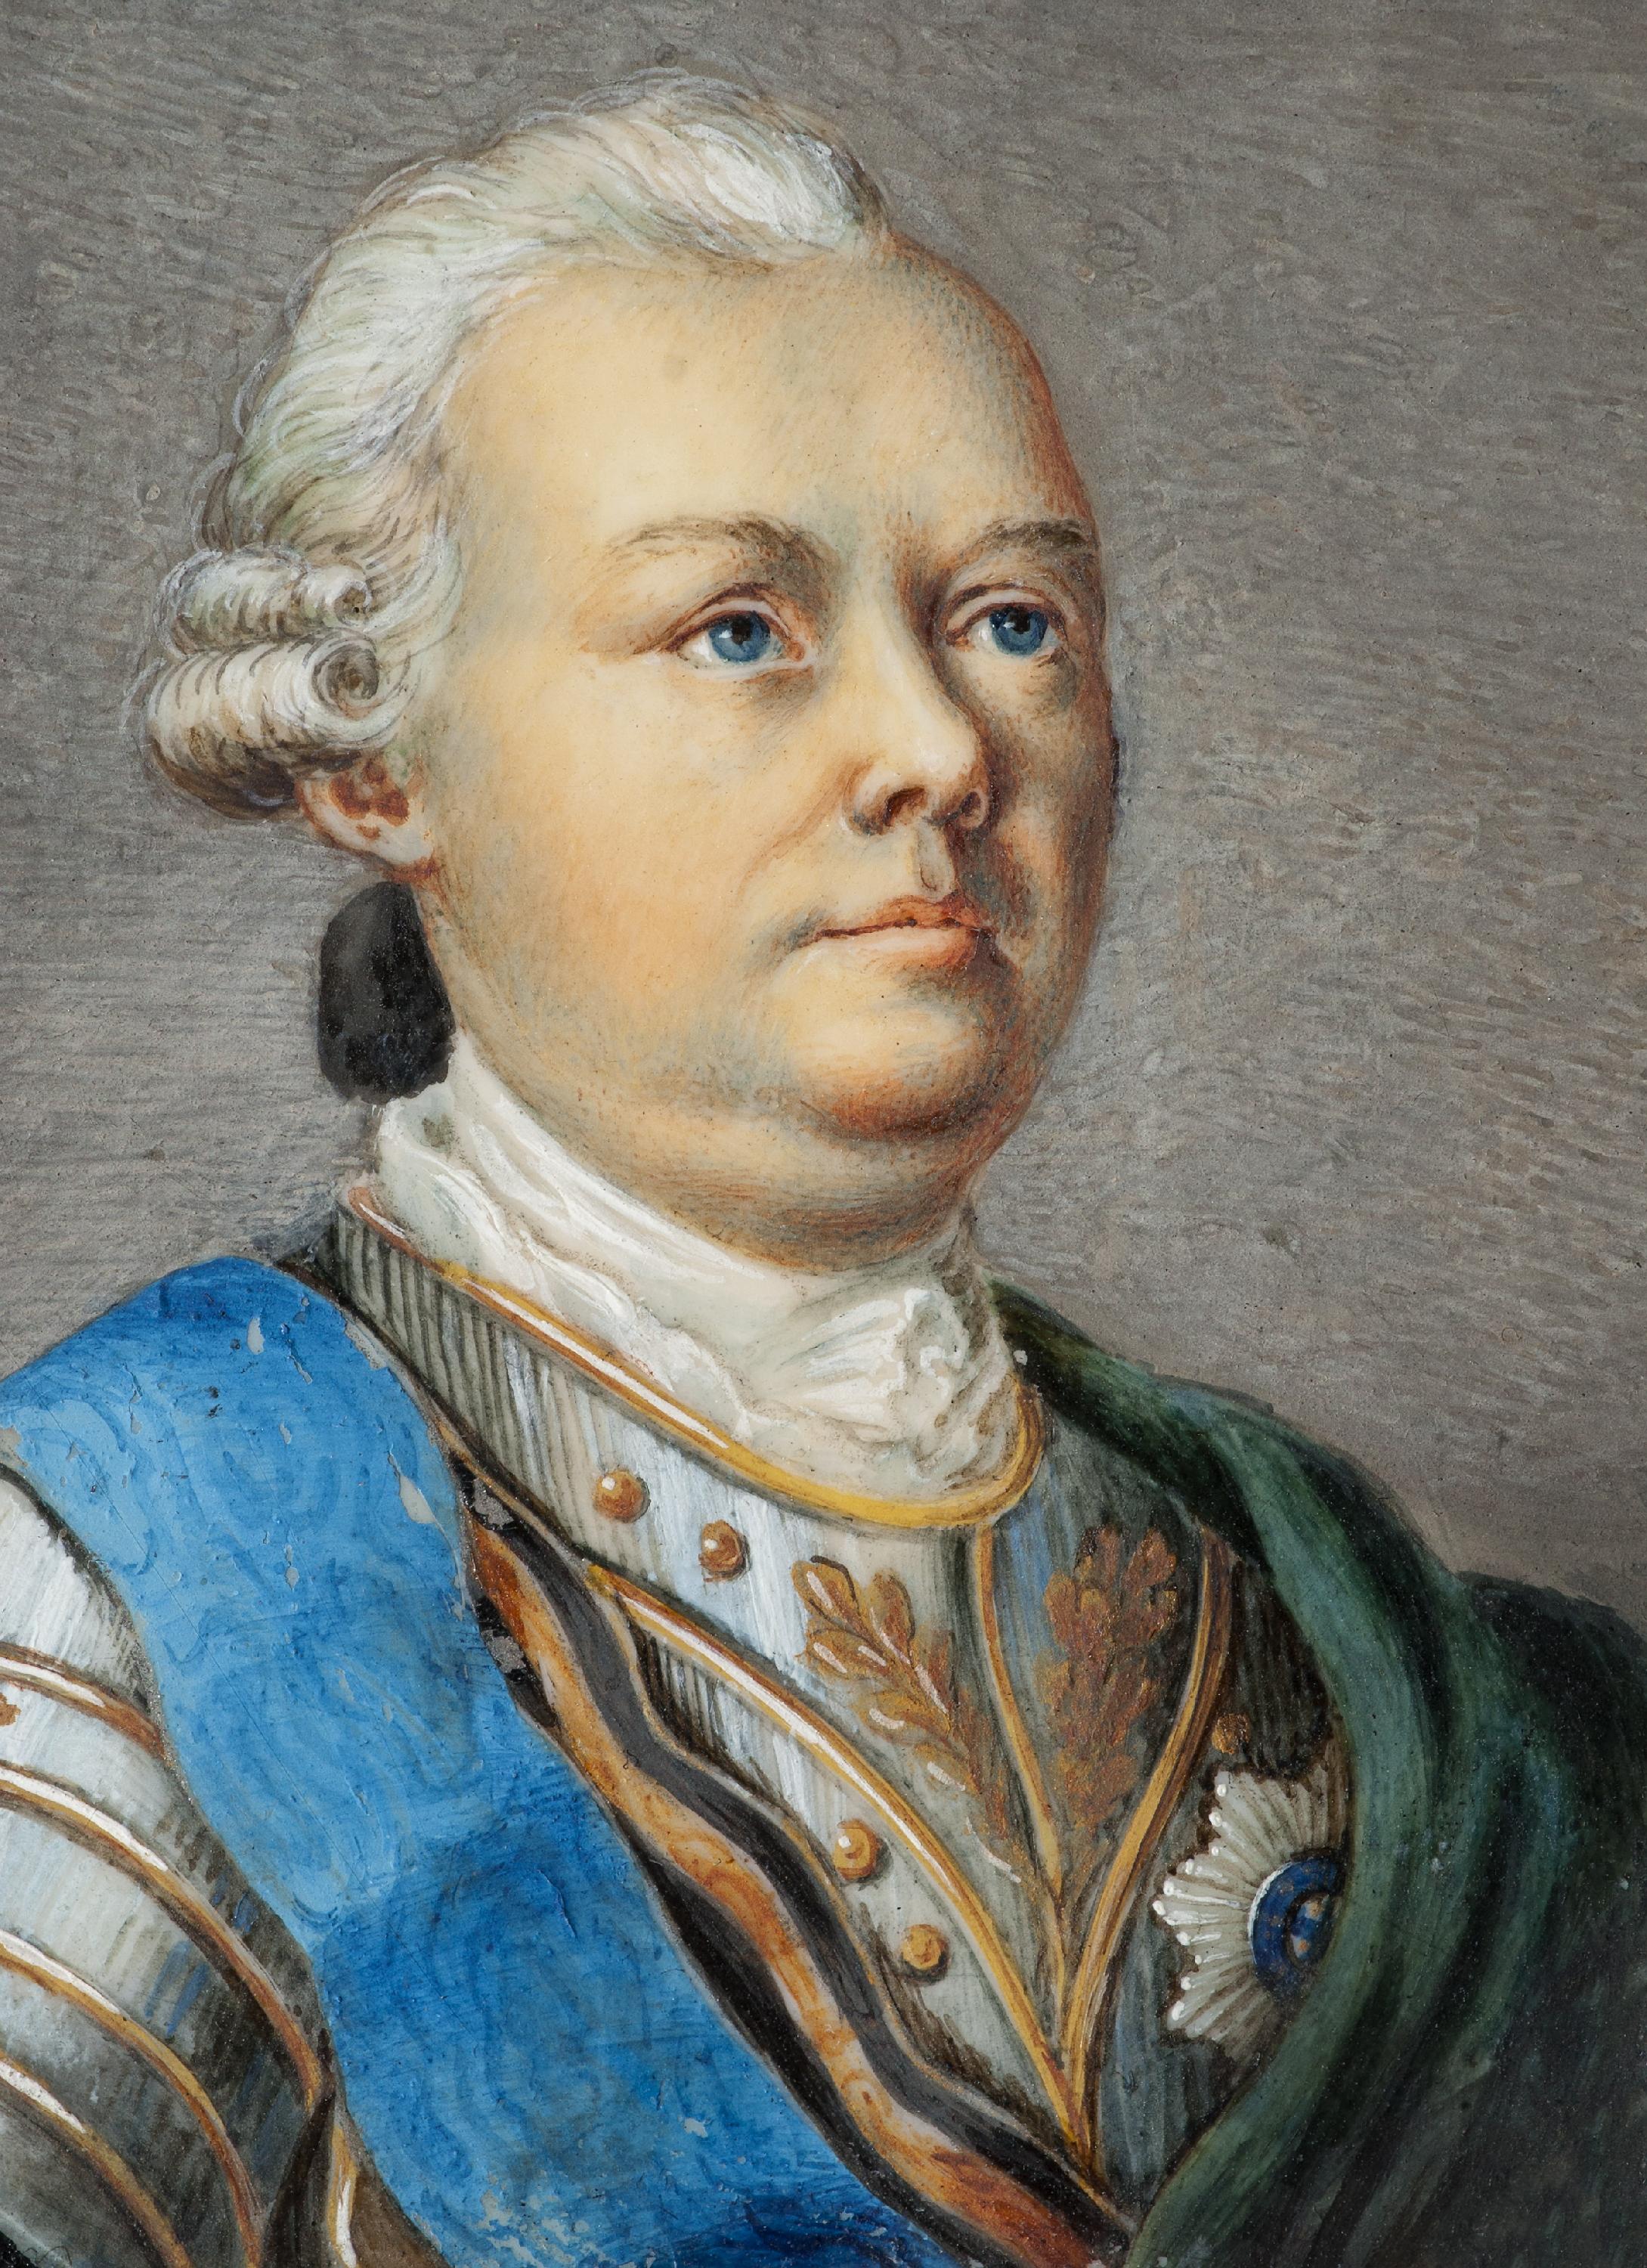 Румянцев Петр Александрович (1725–1796)